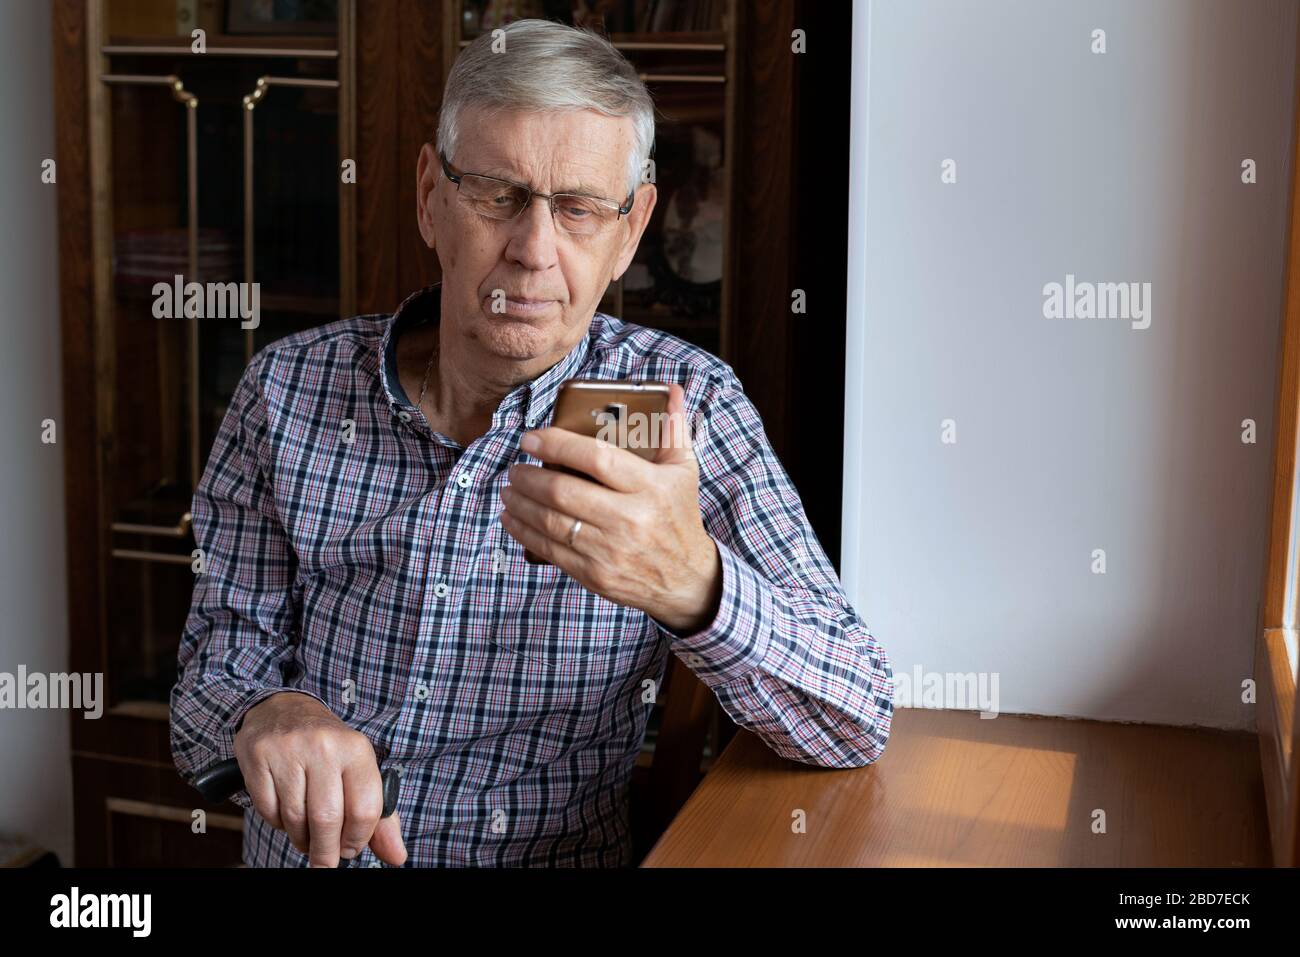 Un homme âgé de 80 ans, assis à la maison, regardant le smartphone. Banque D'Images